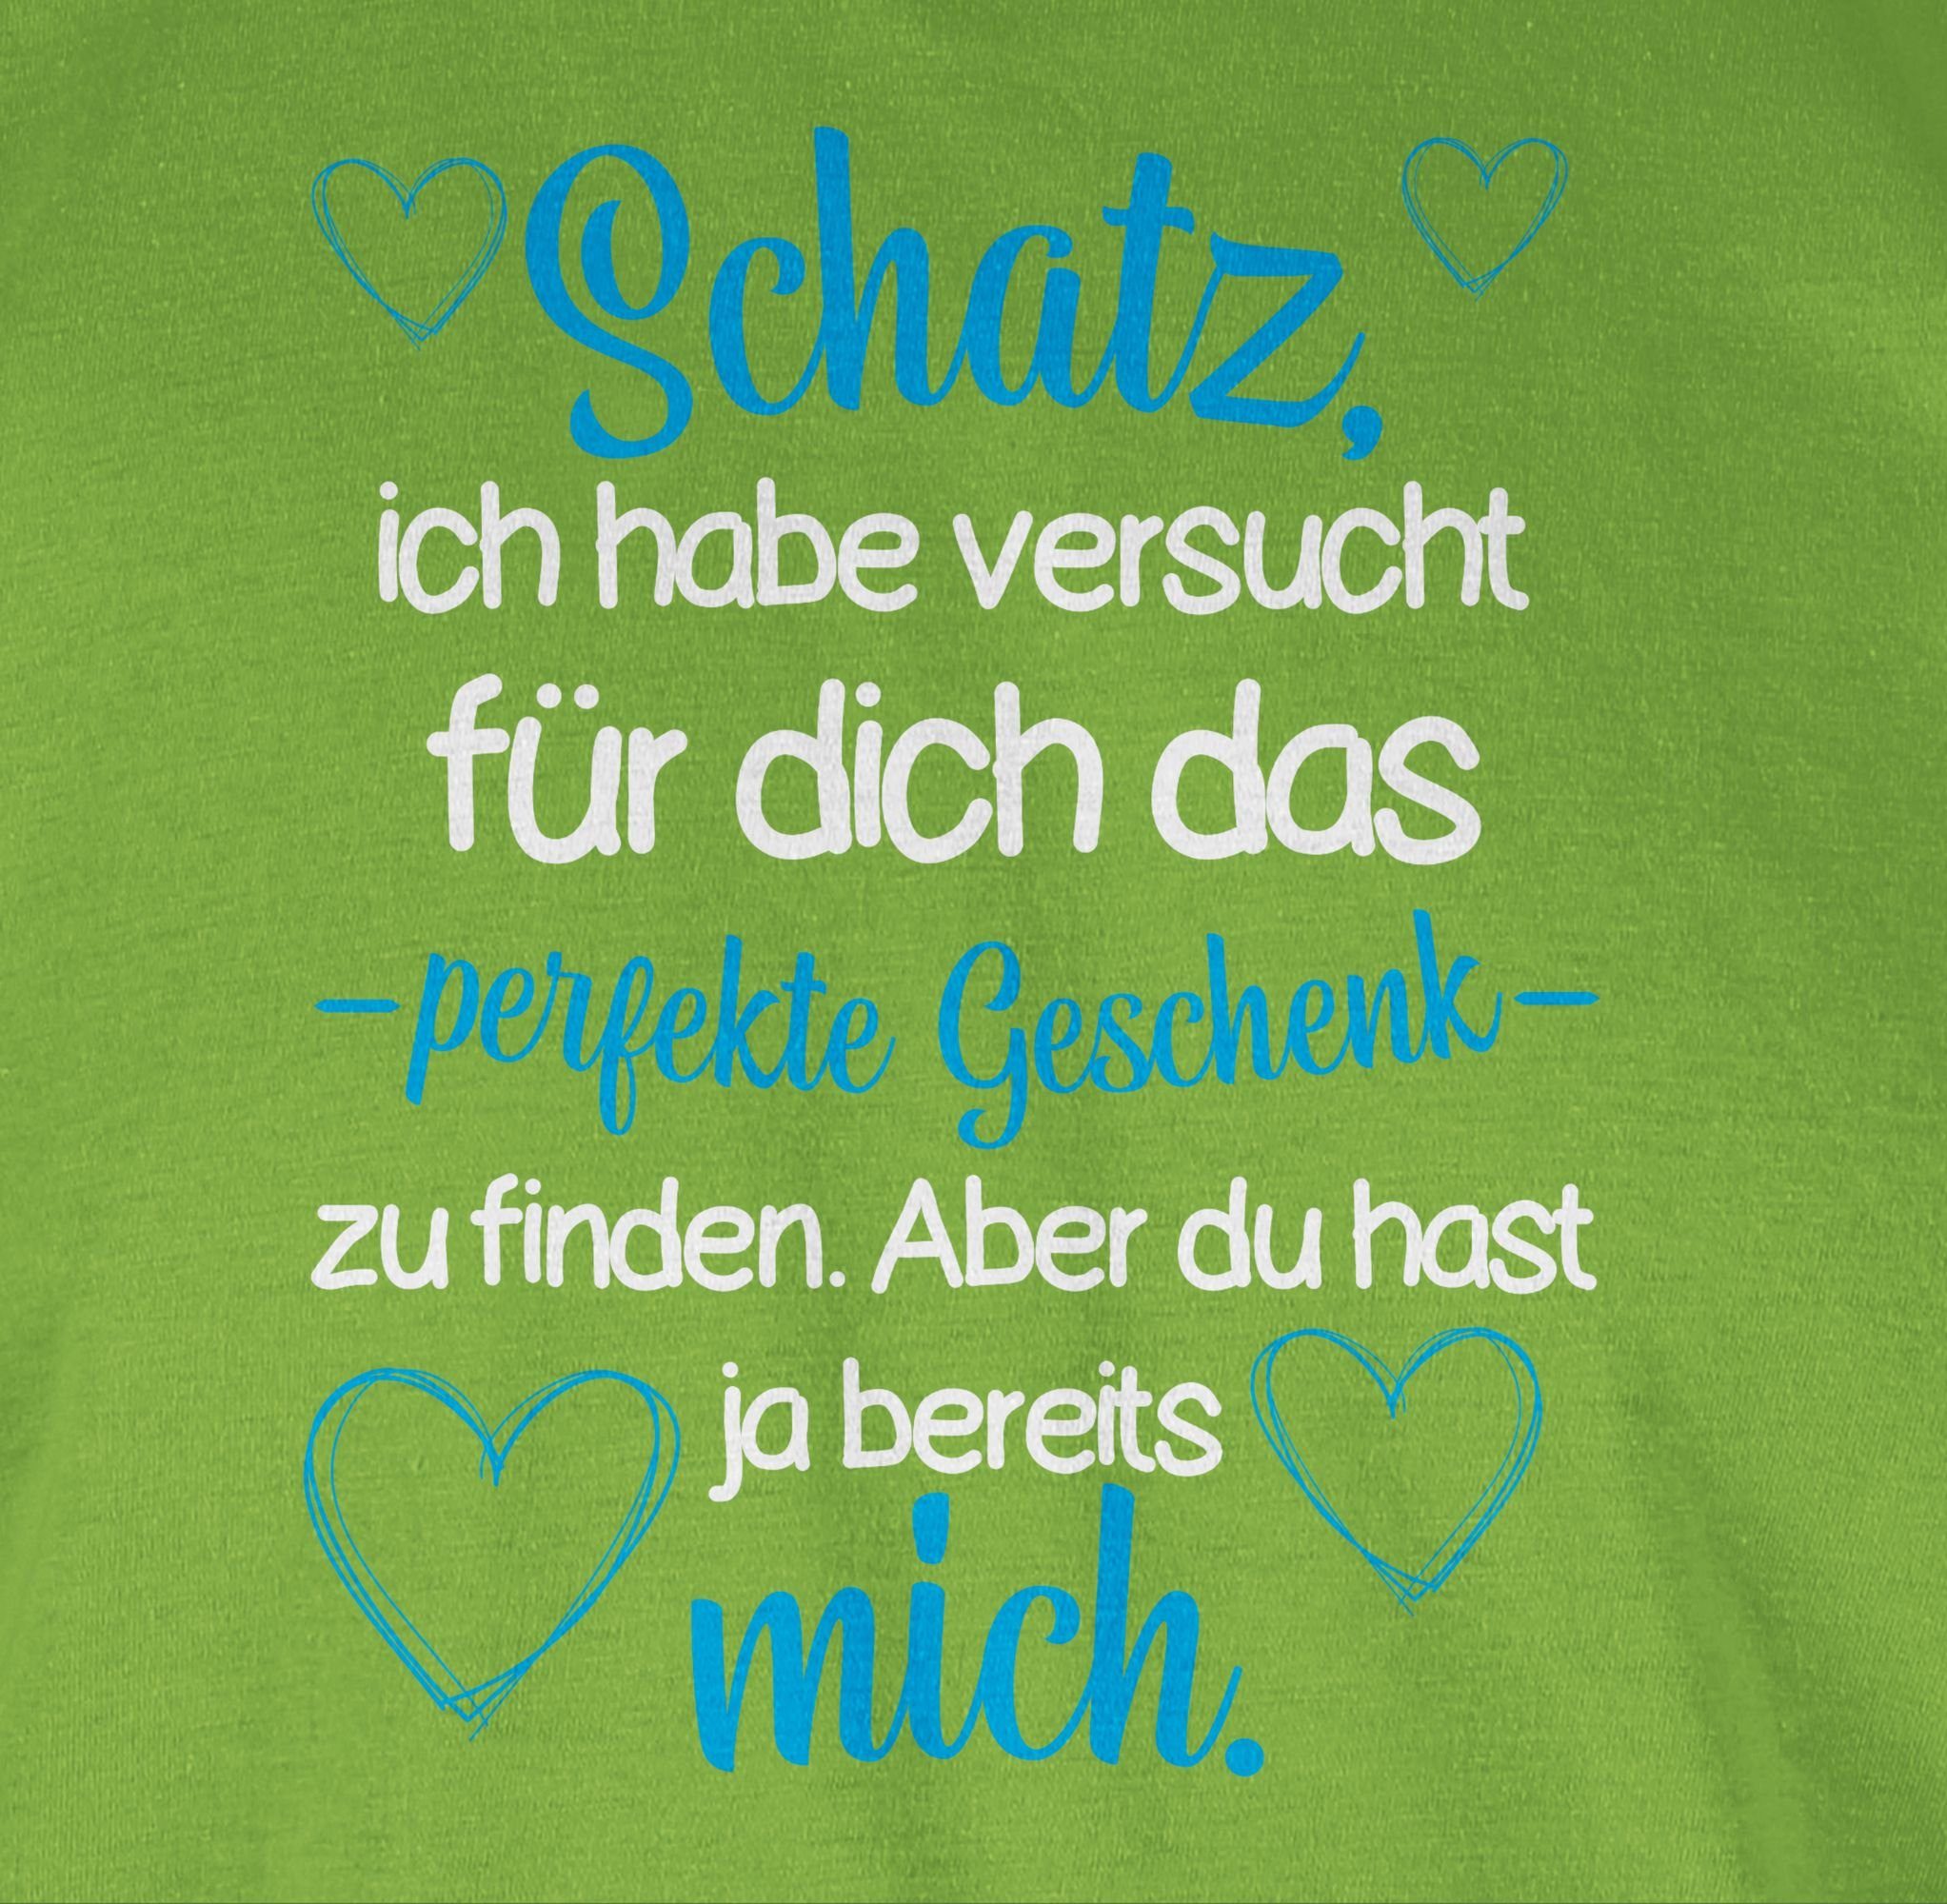 dich Schatz Shirtracer Hellgrün perfekte versucht für Ich zu das Partner Valentinstag habe - T-Shirt 03 Va finden Liebe Geschenk